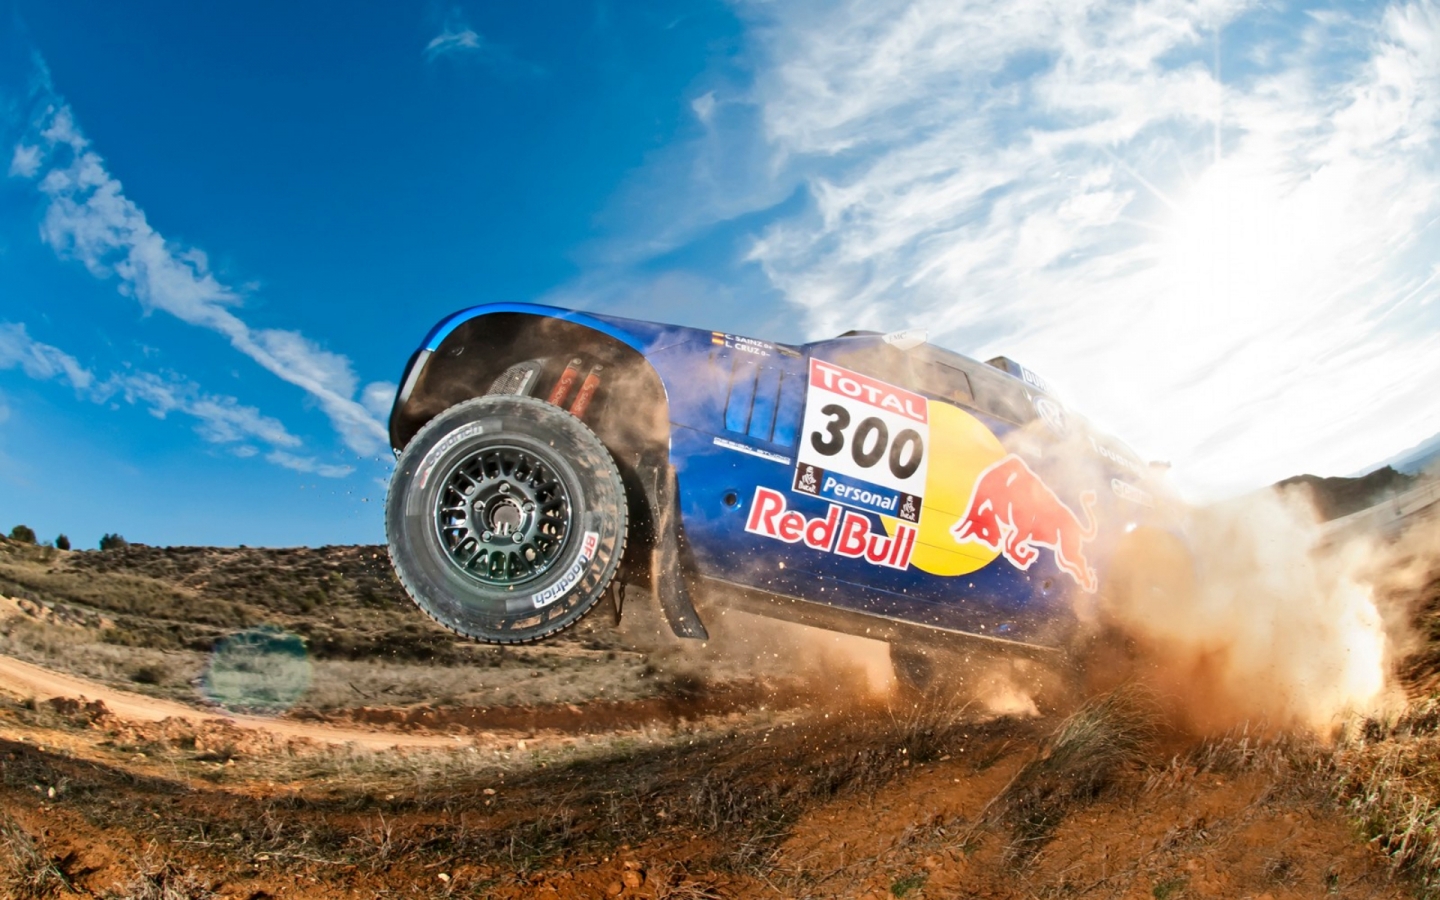 Volkswagen Dakar Race for 1440 x 900 widescreen resolution